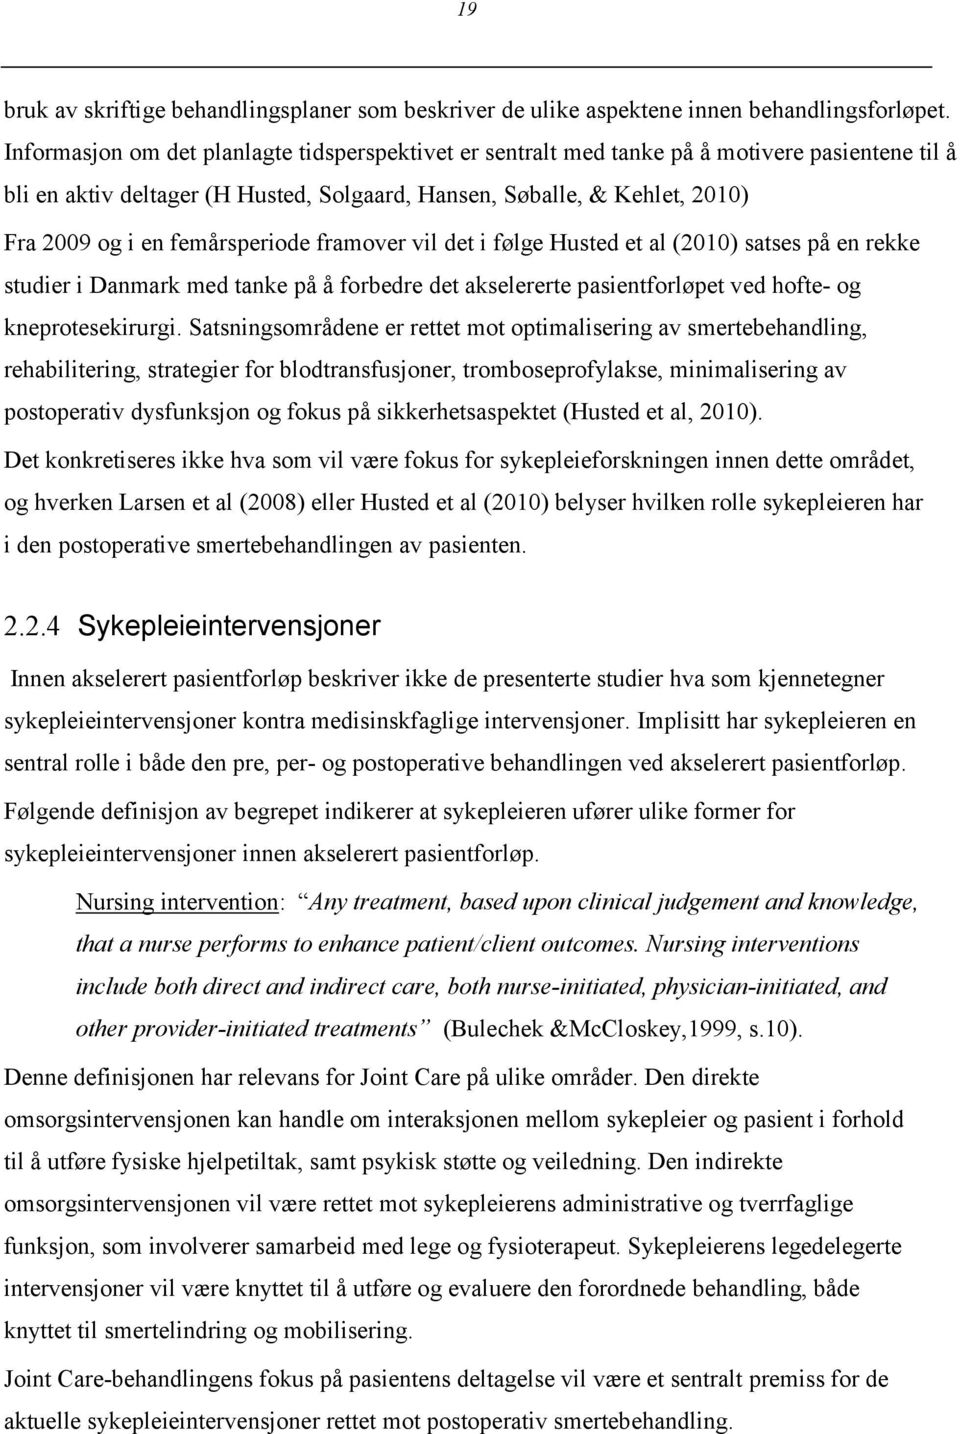 femårsperiode framover vil det i følge Husted et al (2010) satses på en rekke studier i Danmark med tanke på å forbedre det akselererte pasientforløpet ved hofte- og kneprotesekirurgi.